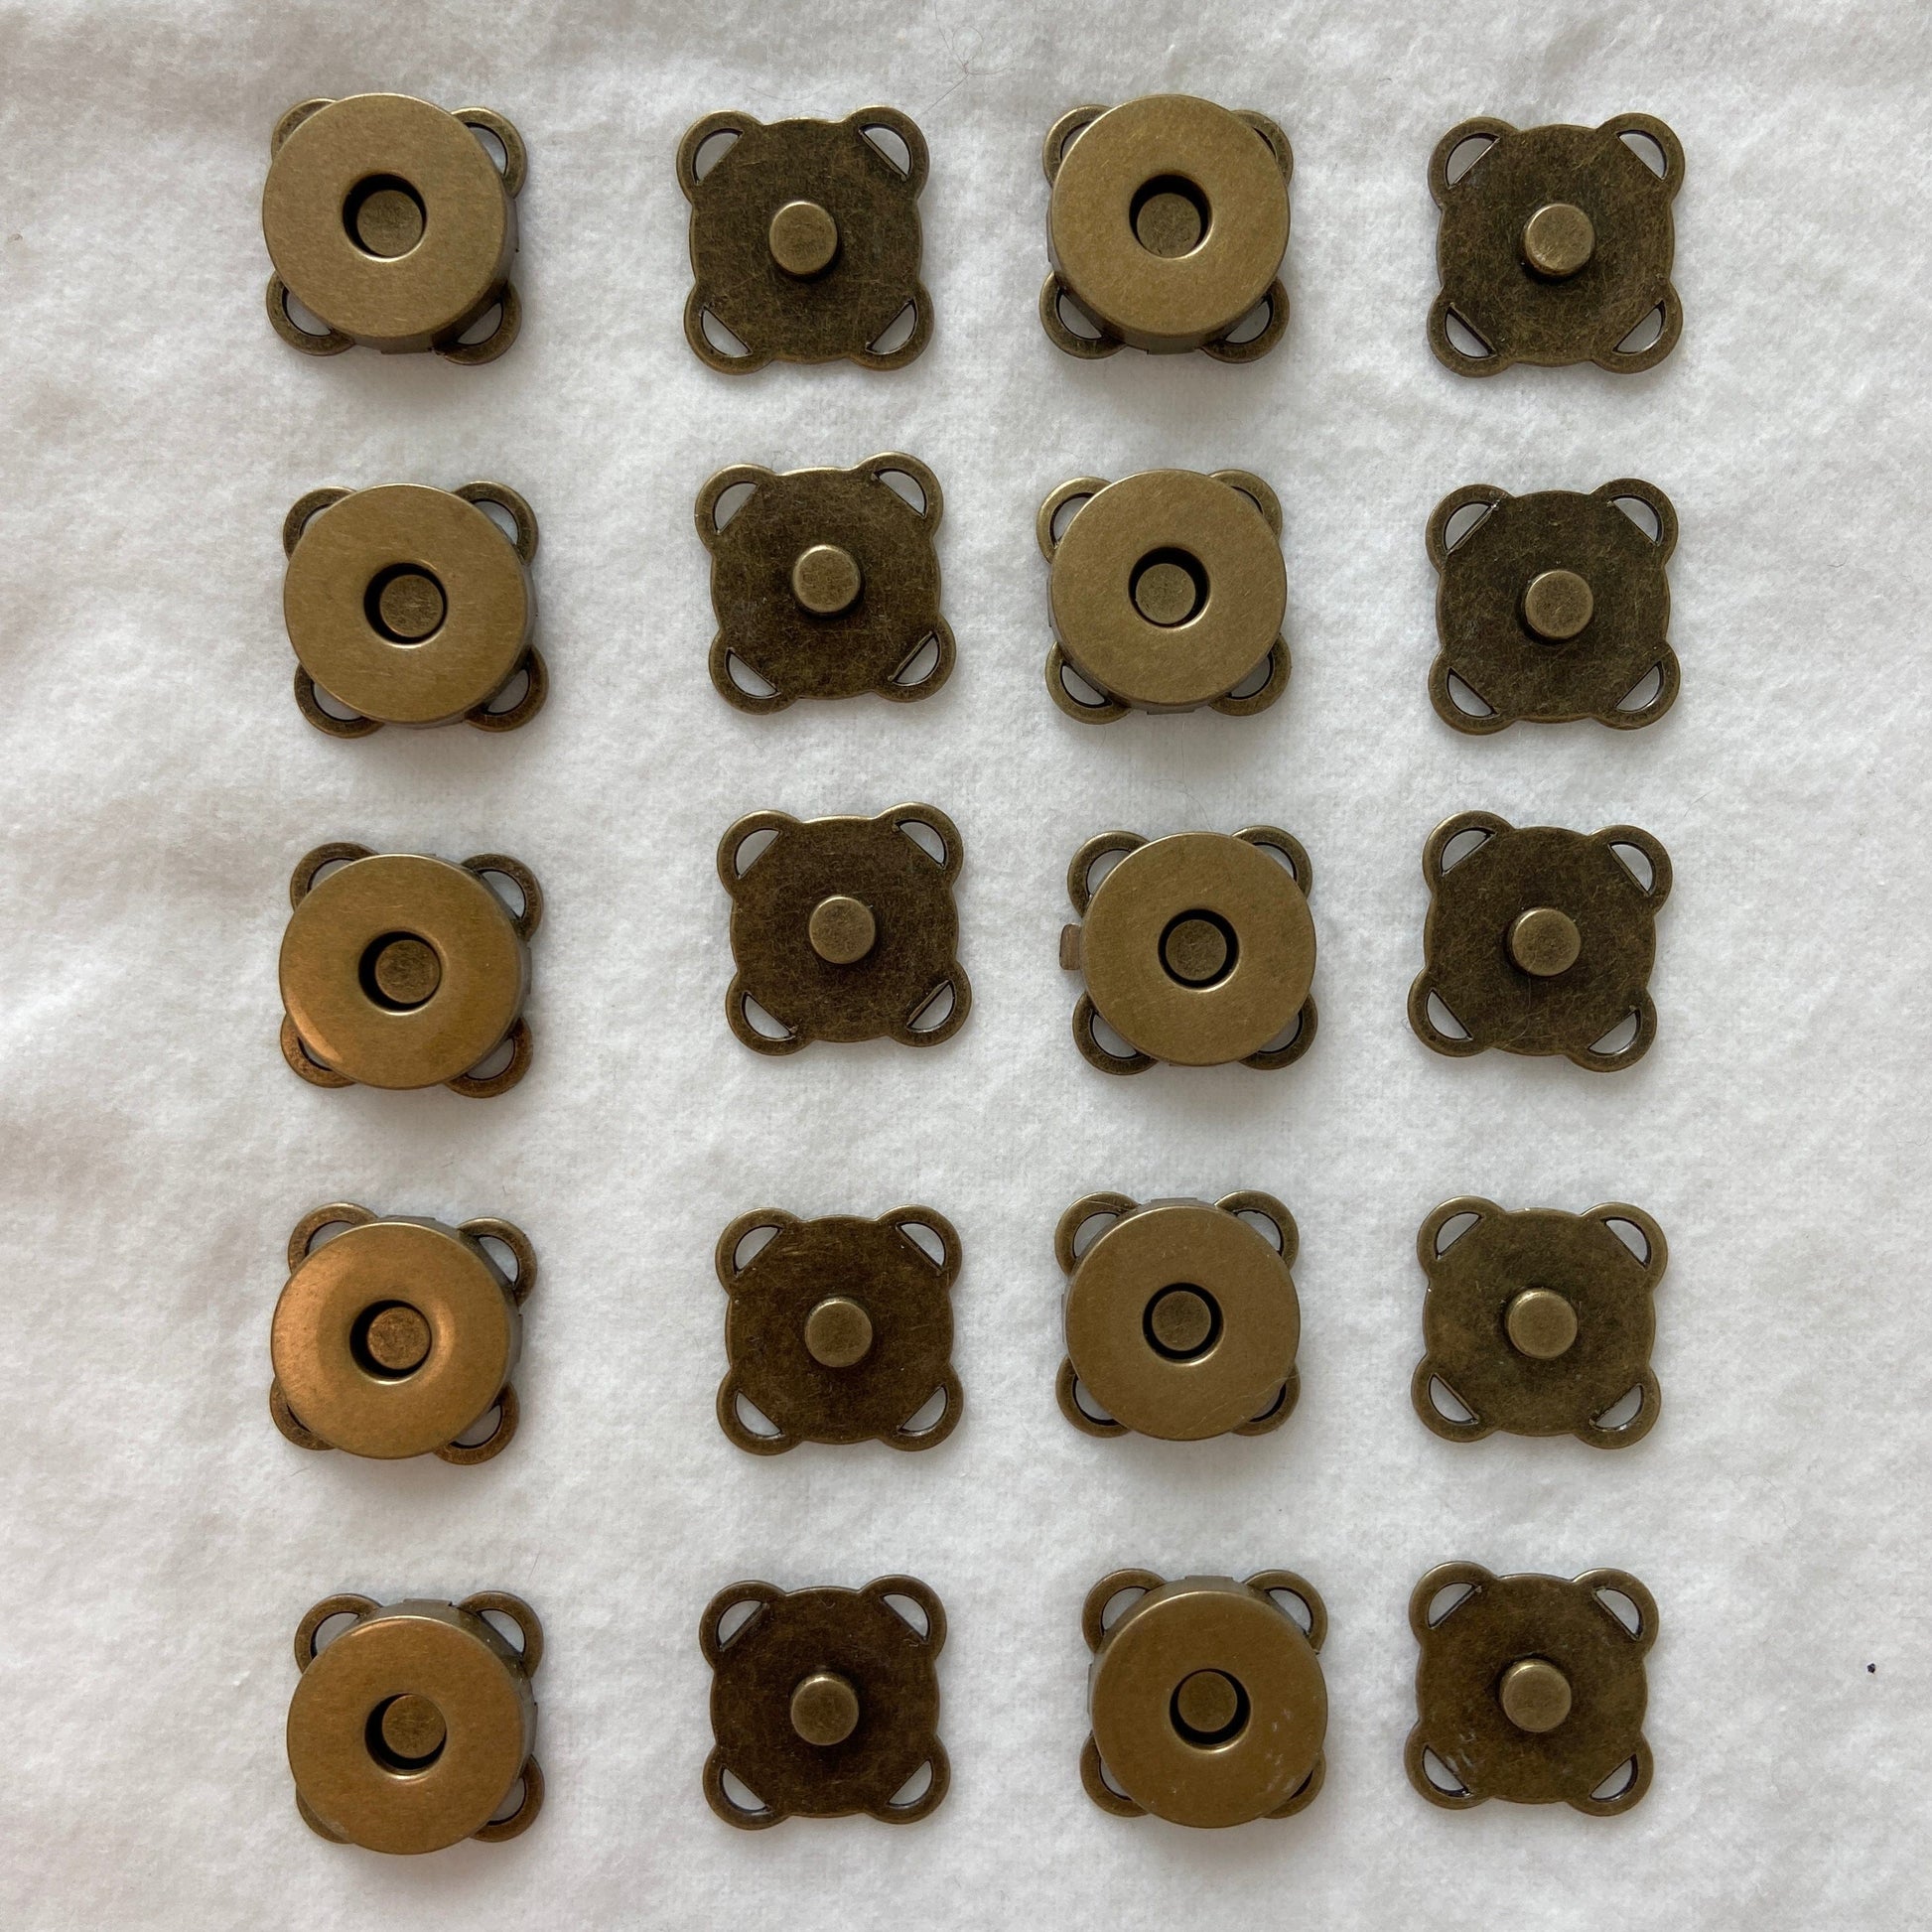 Flora Street Atelier Bag Hardware Sew-on Magnetic Snap Button (10 sets) | Bag Fastener